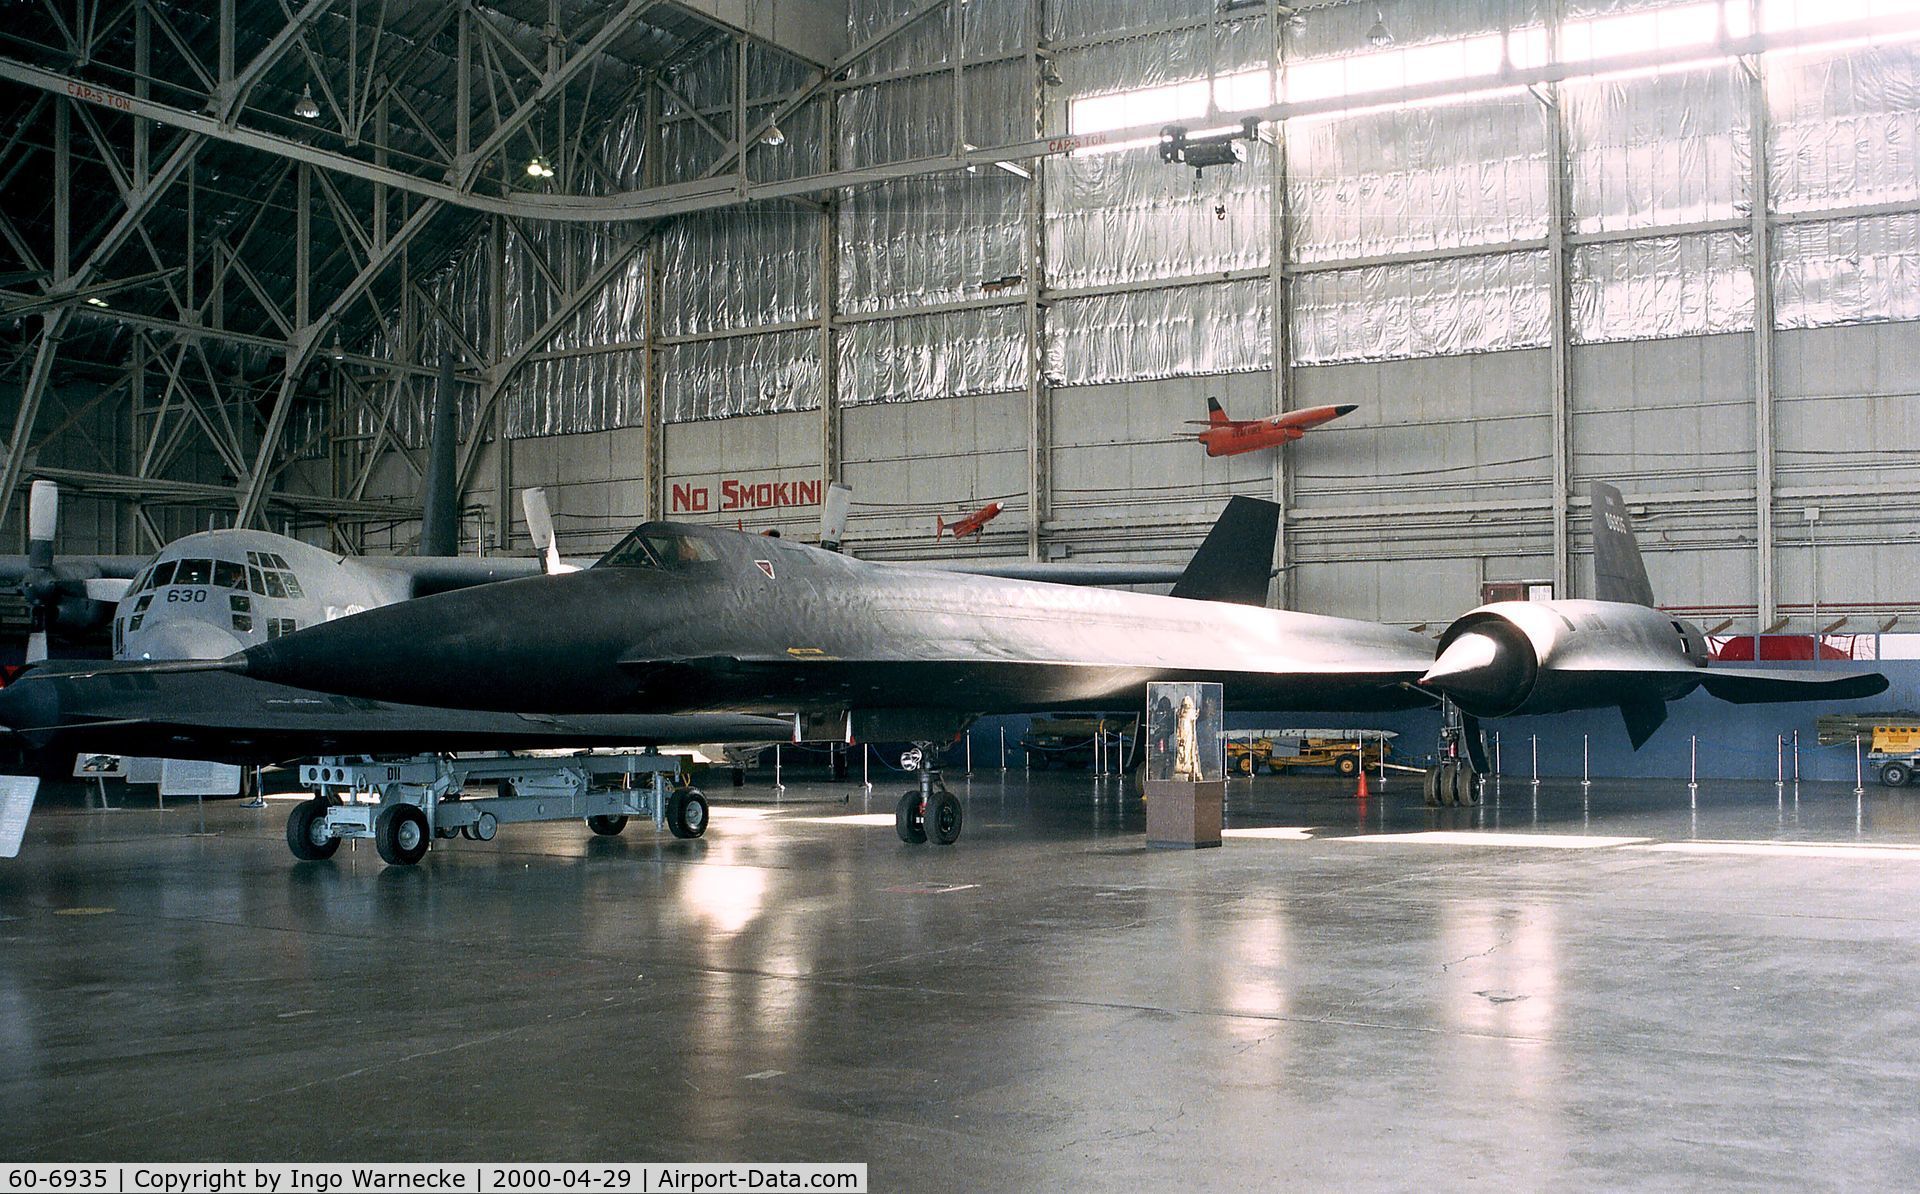 60-6935, 1963 Lockheed YF-12A C/N 1002, Lockheed YF-12A of the USAF at the USAF Museum, Dayton OH